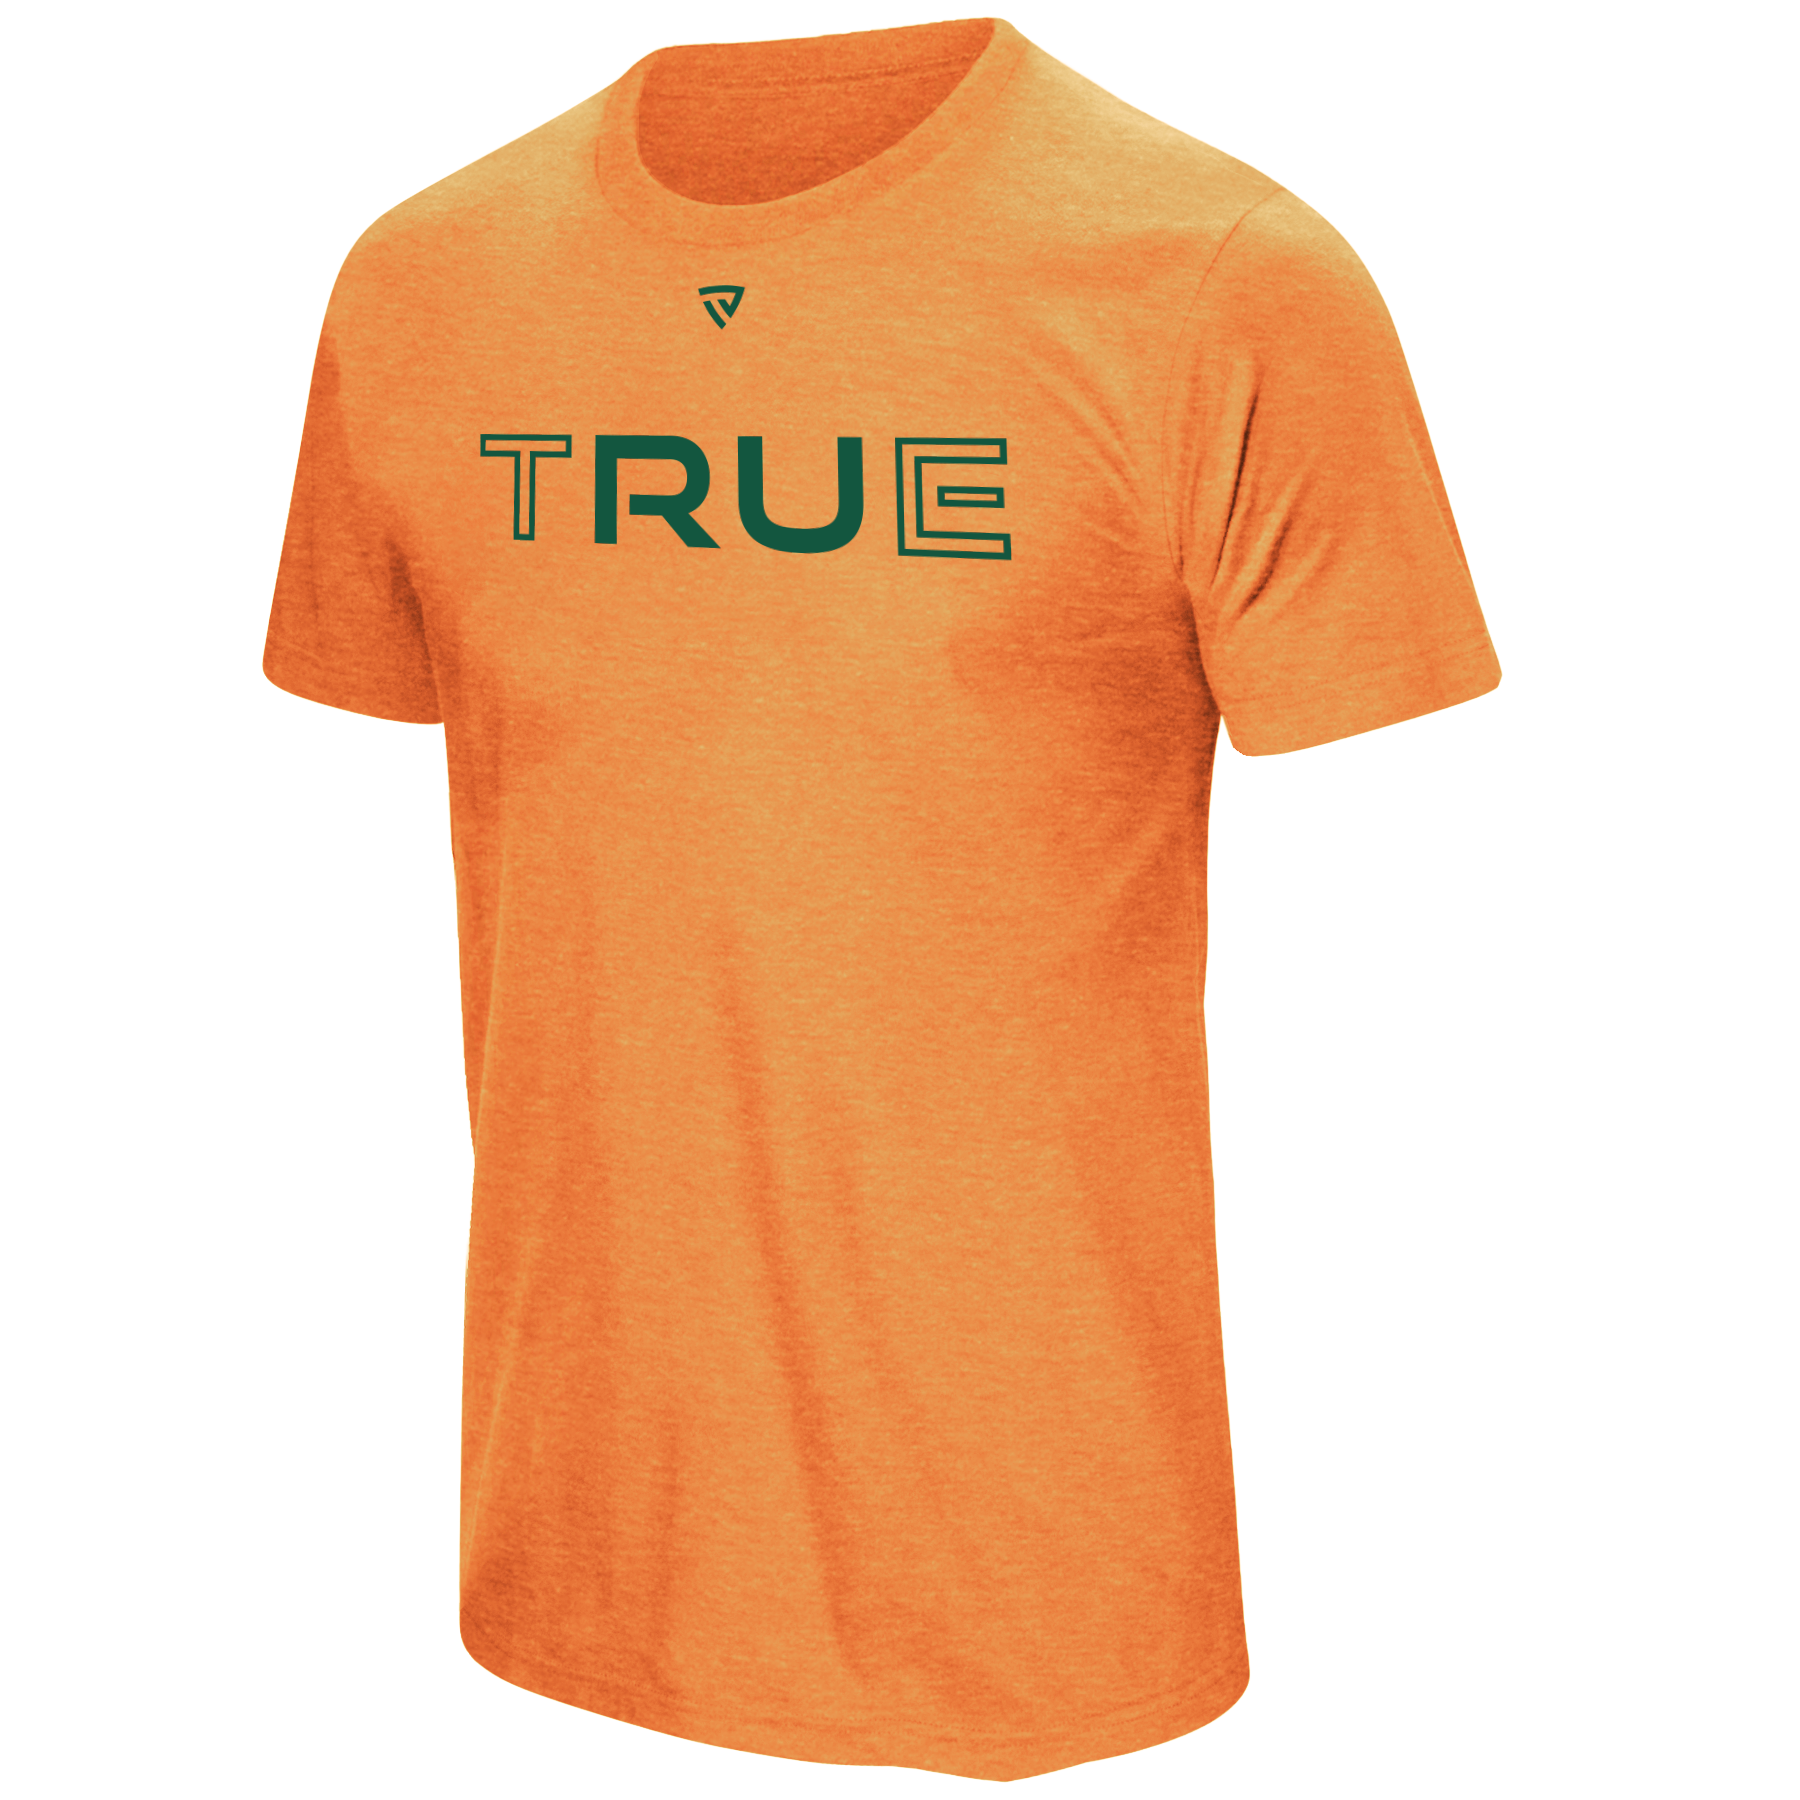 Men's RU TRUE Orange Tee